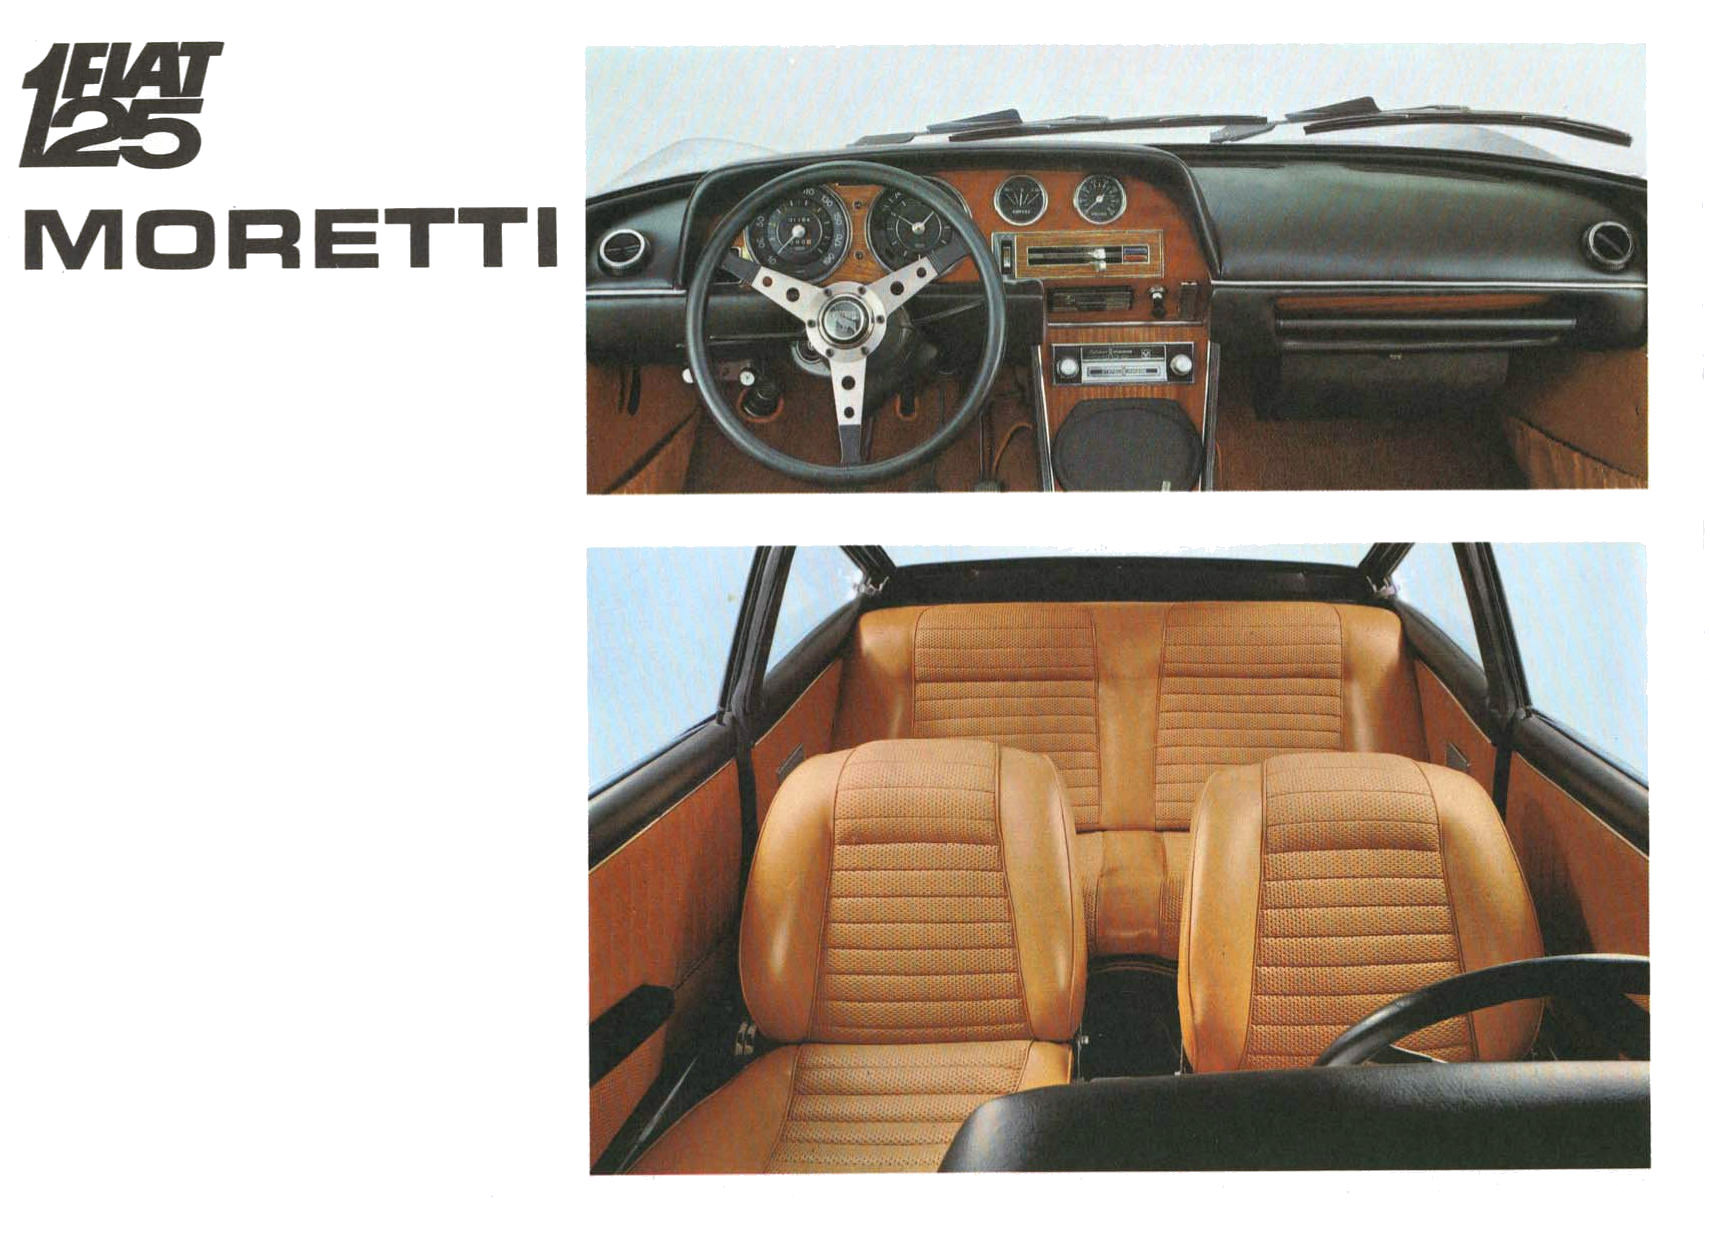 Fiat 125 GS 1.6 Coupé (Moretti) - Brochure